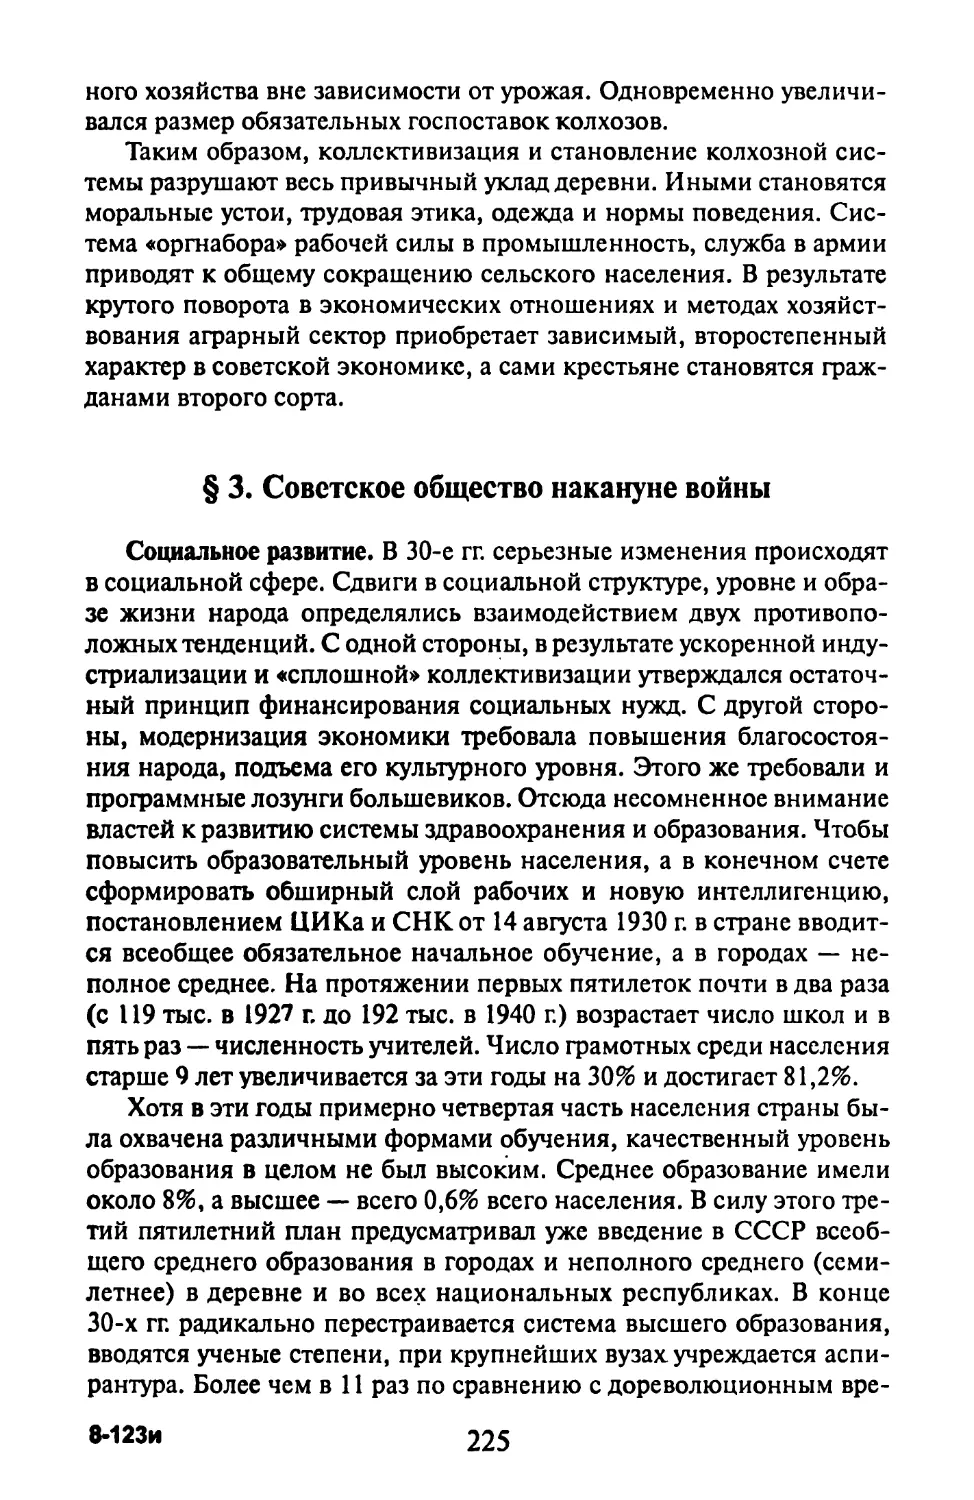 § 3. Советское общество накануне войны